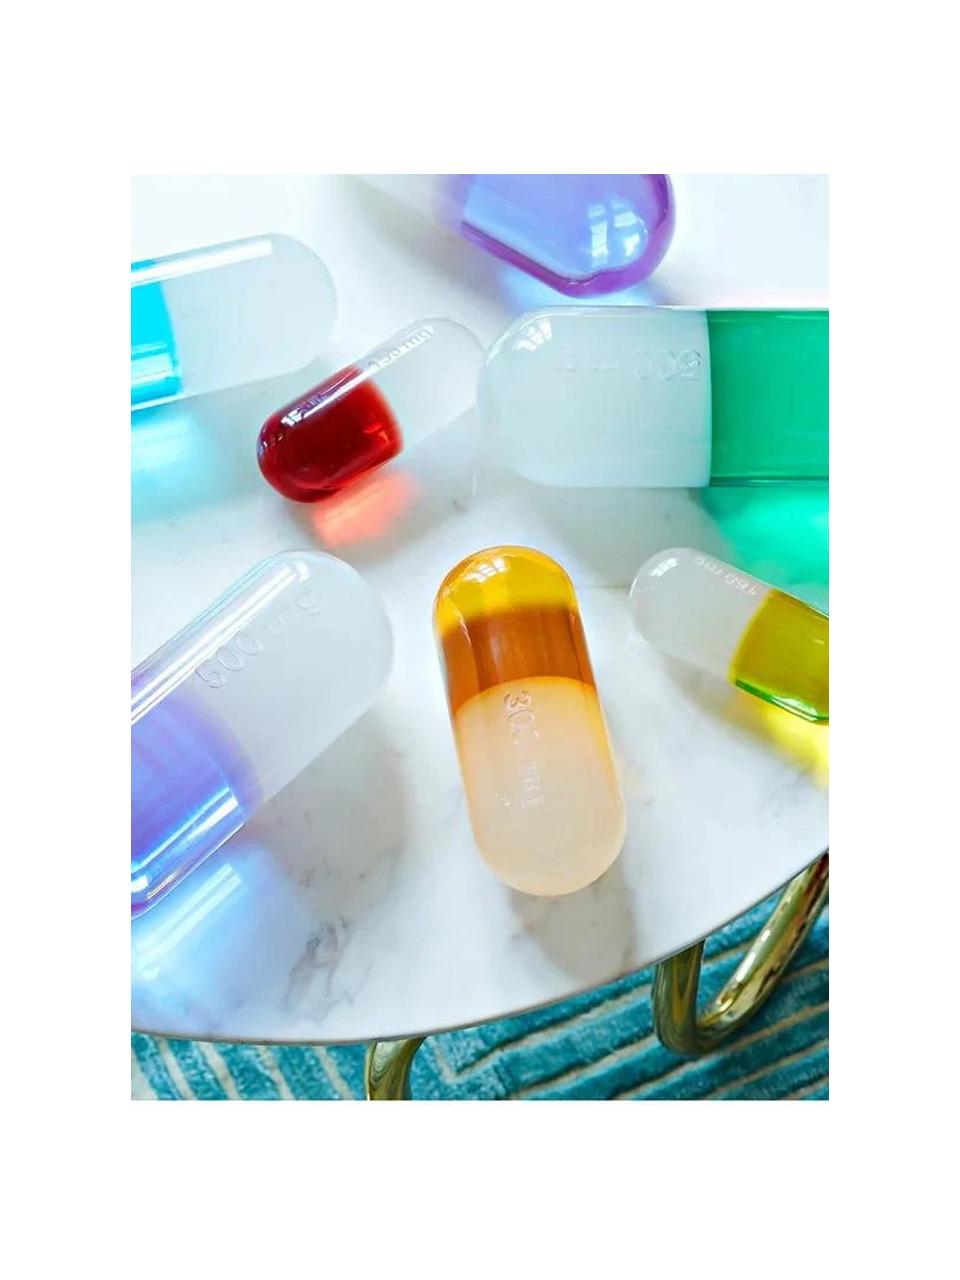 Deko-Objekt Pill, Polyacryl, poliert, Weiss, Zitronengelb, B 17 x H 6 cm